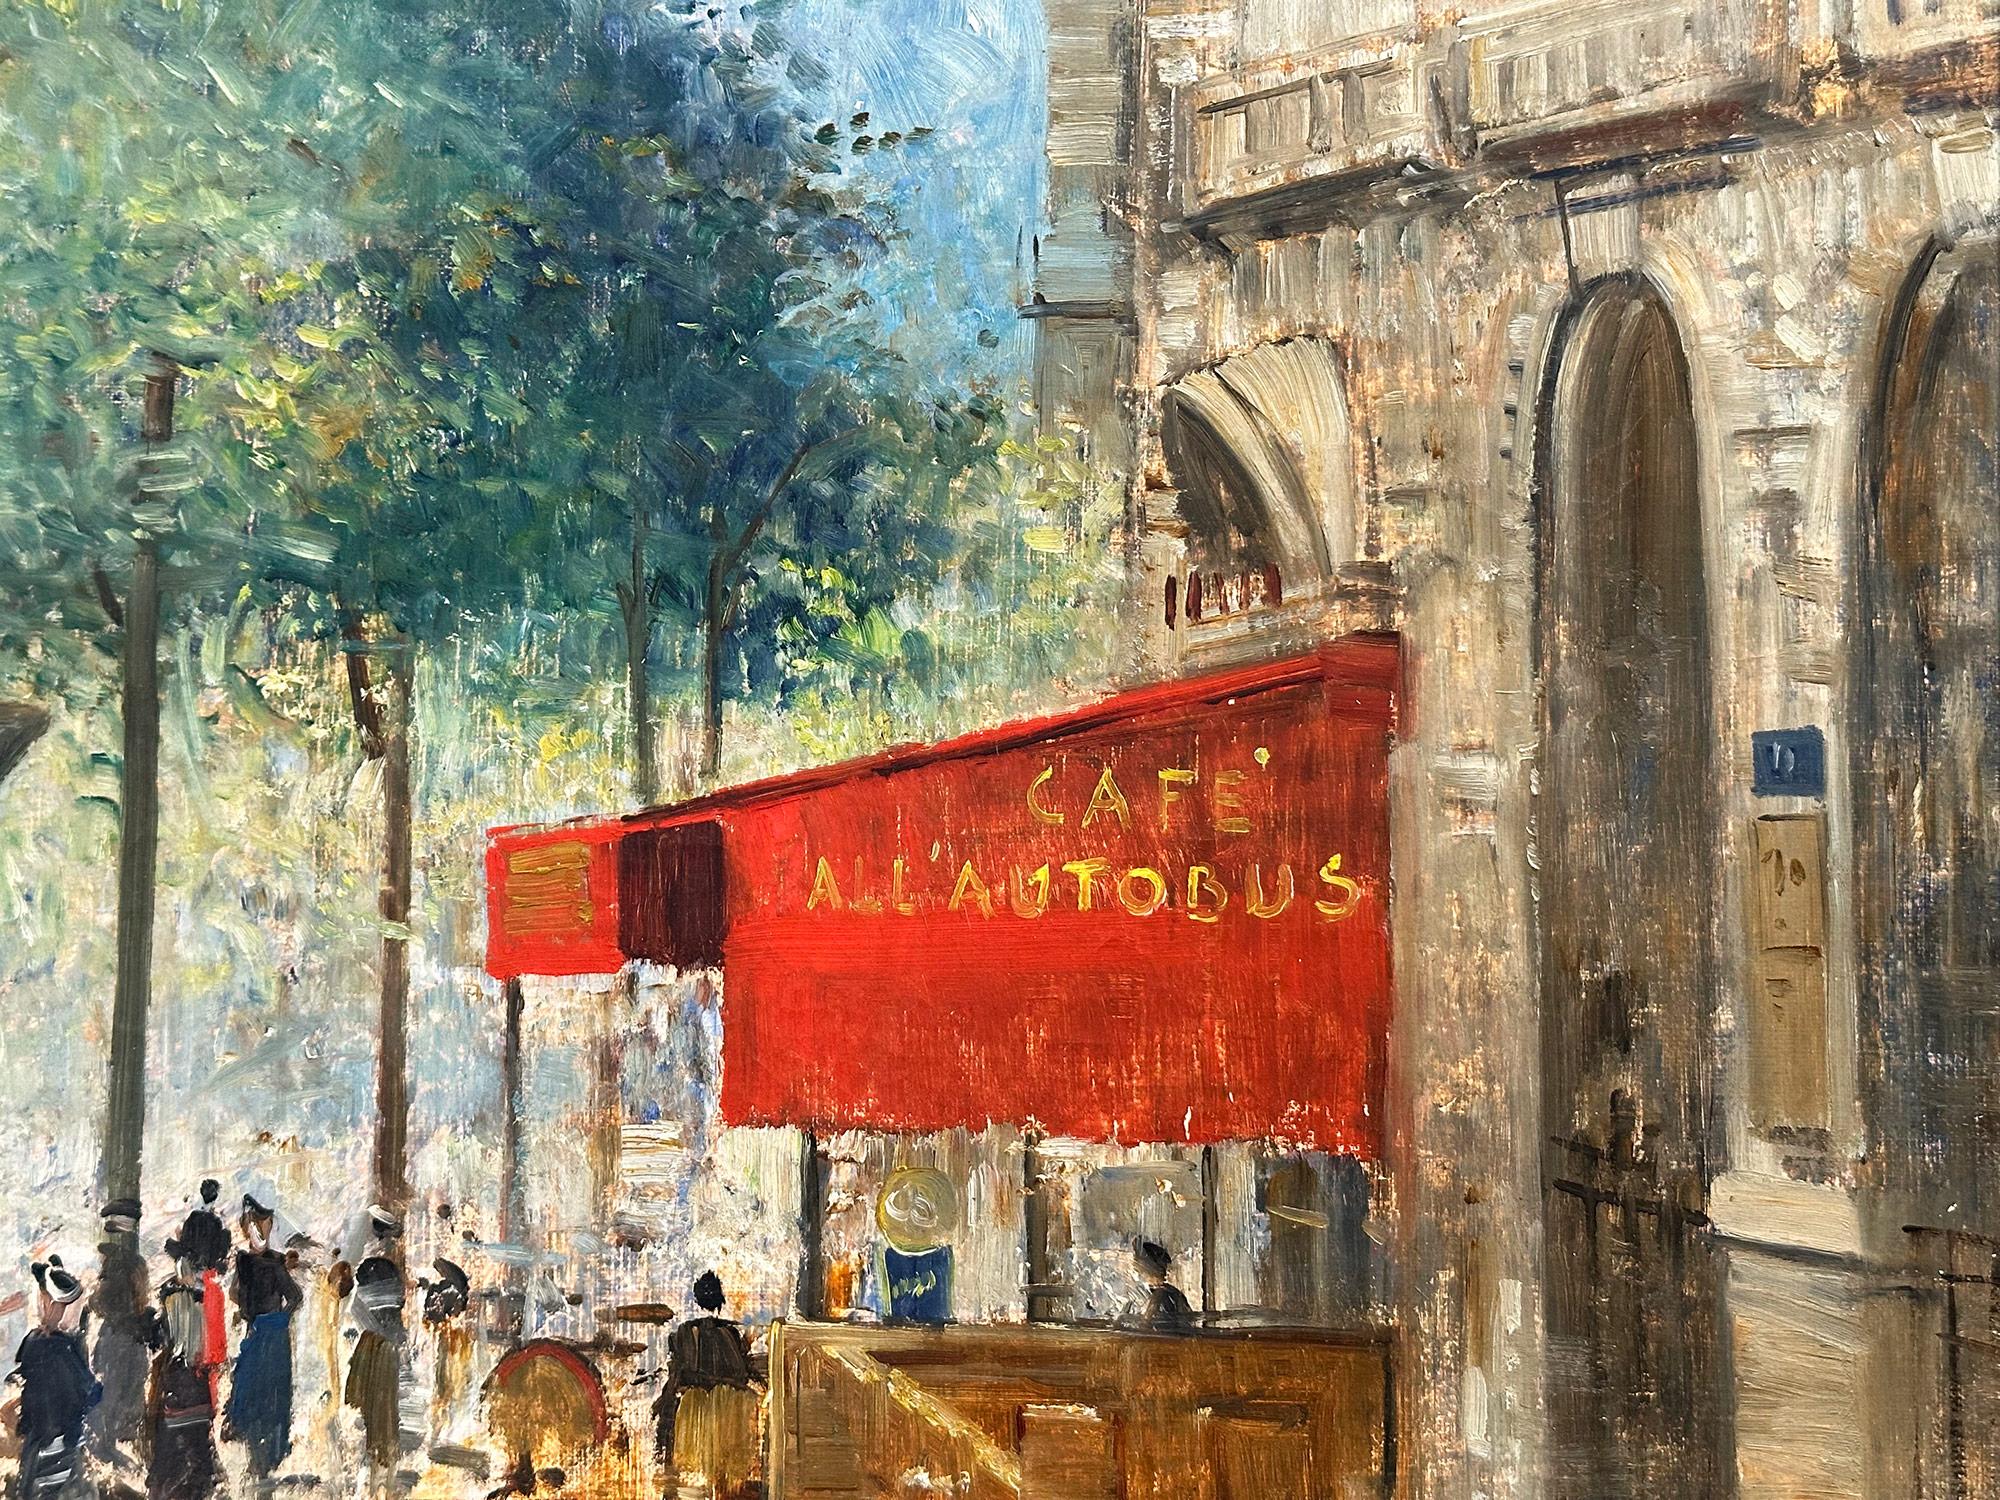 Une belle huile sur toile de l'artiste français, 
Francesco Pagliazzi. Pagliazzi était un peintre français connu pour ses paysages urbains riches en couleurs décrivant l'époque de sa génération. De Milan à Monte Carlo en passant par Paris, sa soif